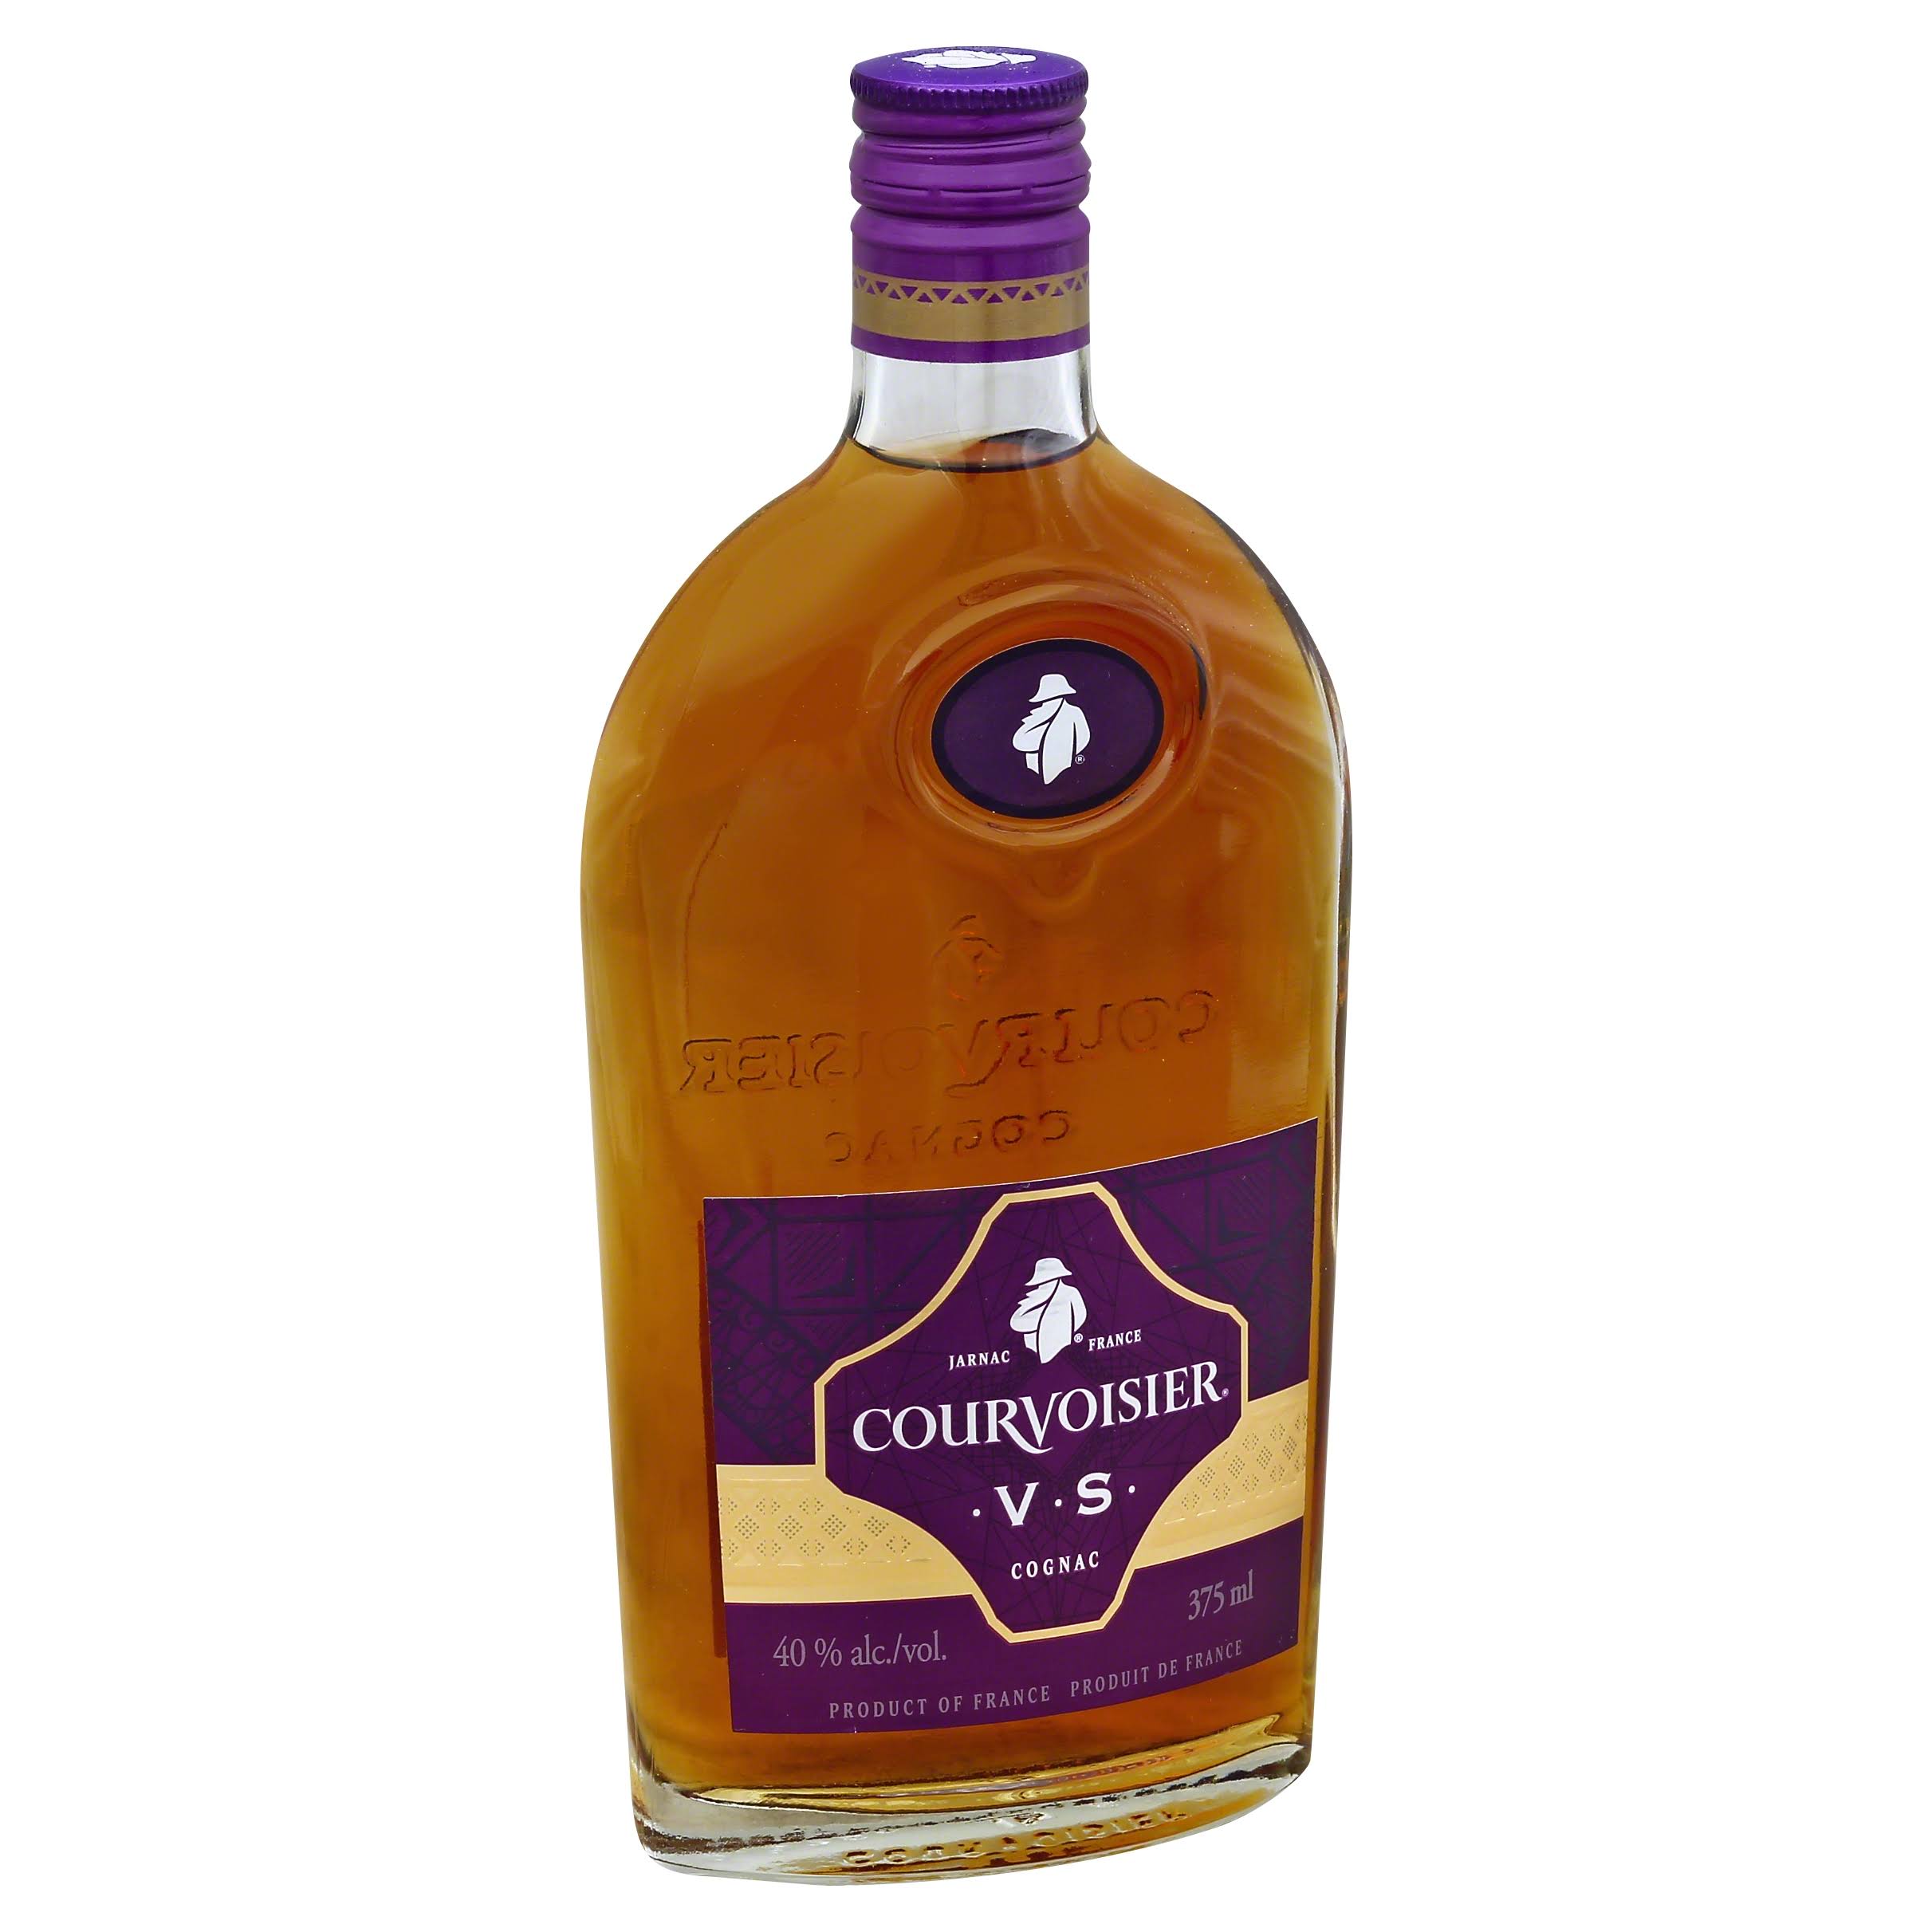 Courvoisier VS Cognac - 375 ml